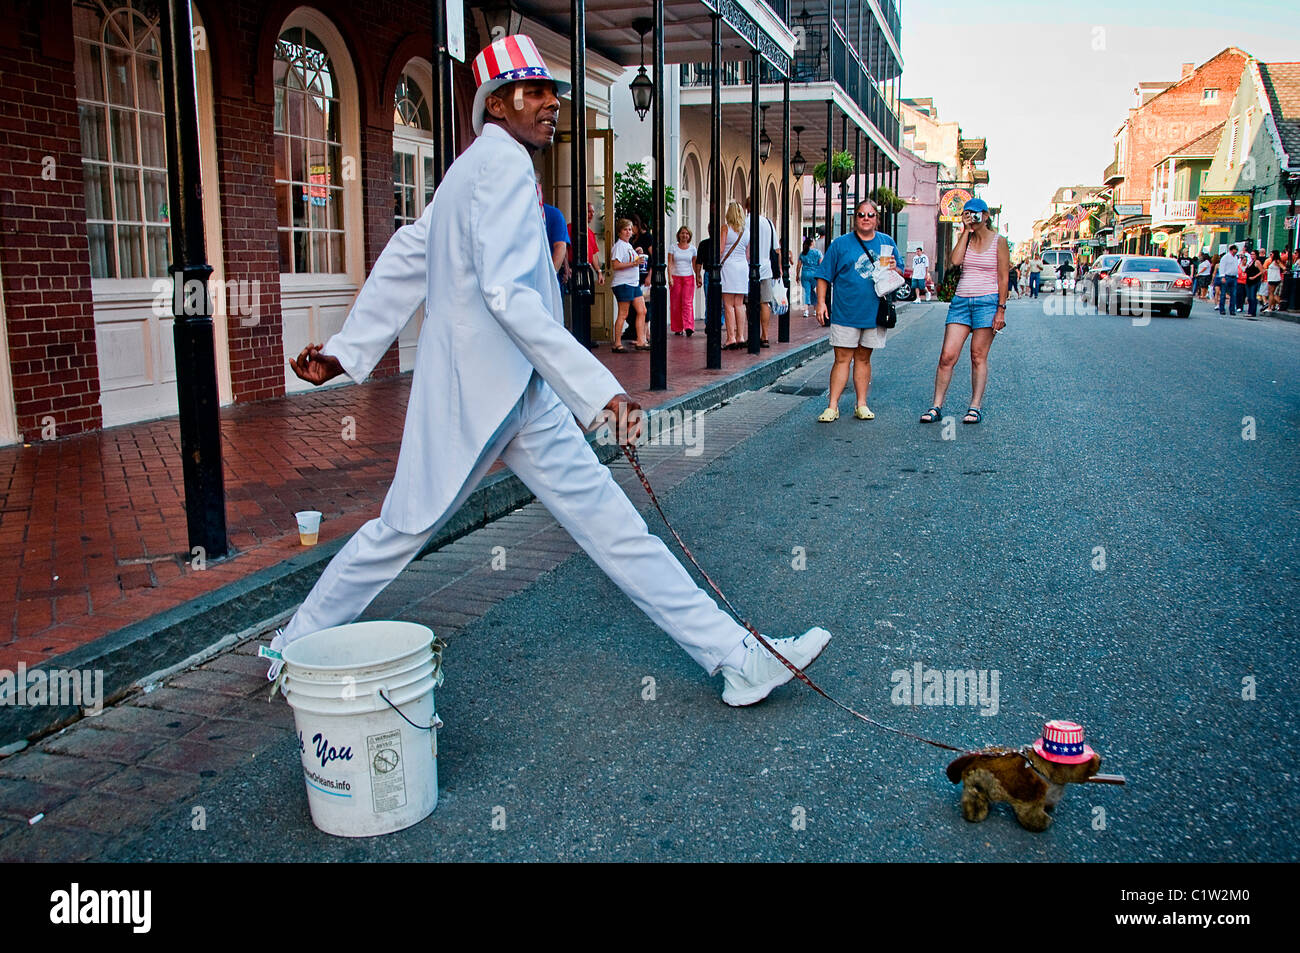 Hombre en el Tío Sam traje caminando con un perro en una calle, Nueva Orleans, Louisiana, EE.UU. Foto de stock